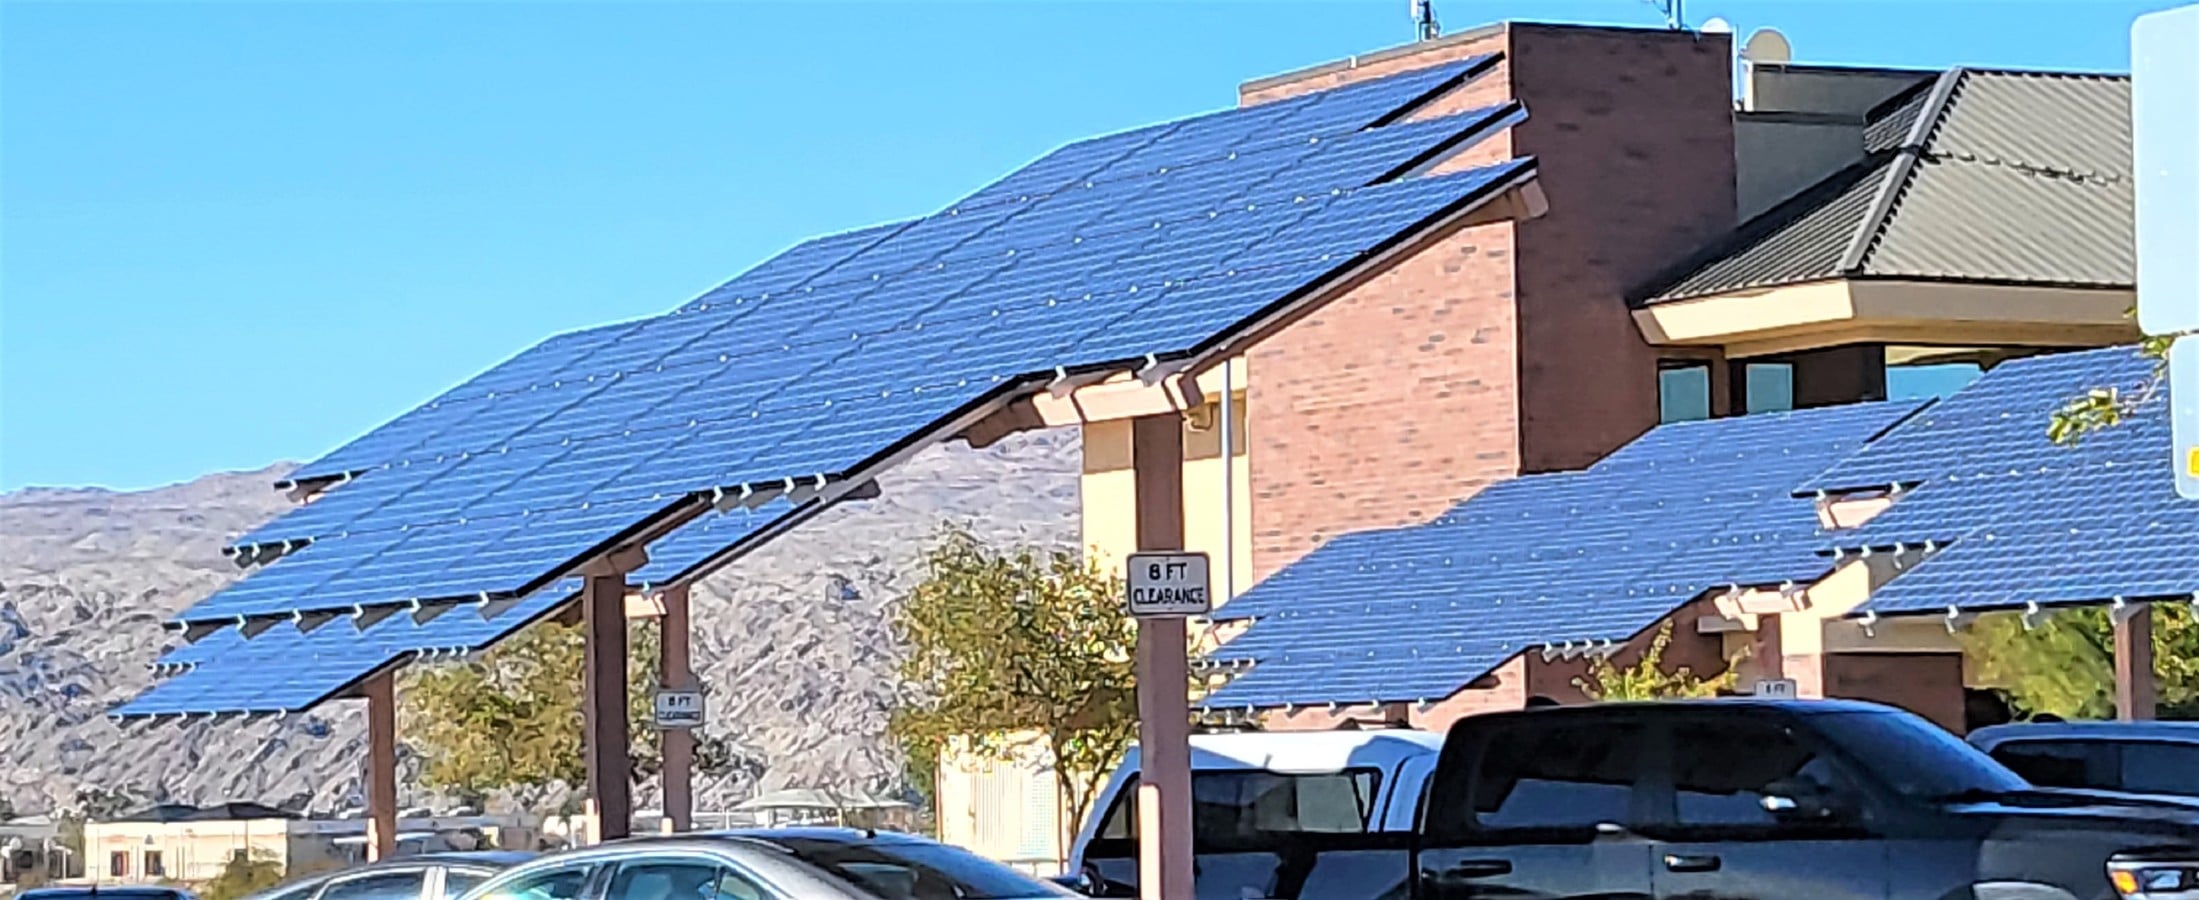 Ein Solar Carport ist oft eine lohnende Investition. Foto: AZ.BLT via Twenty20